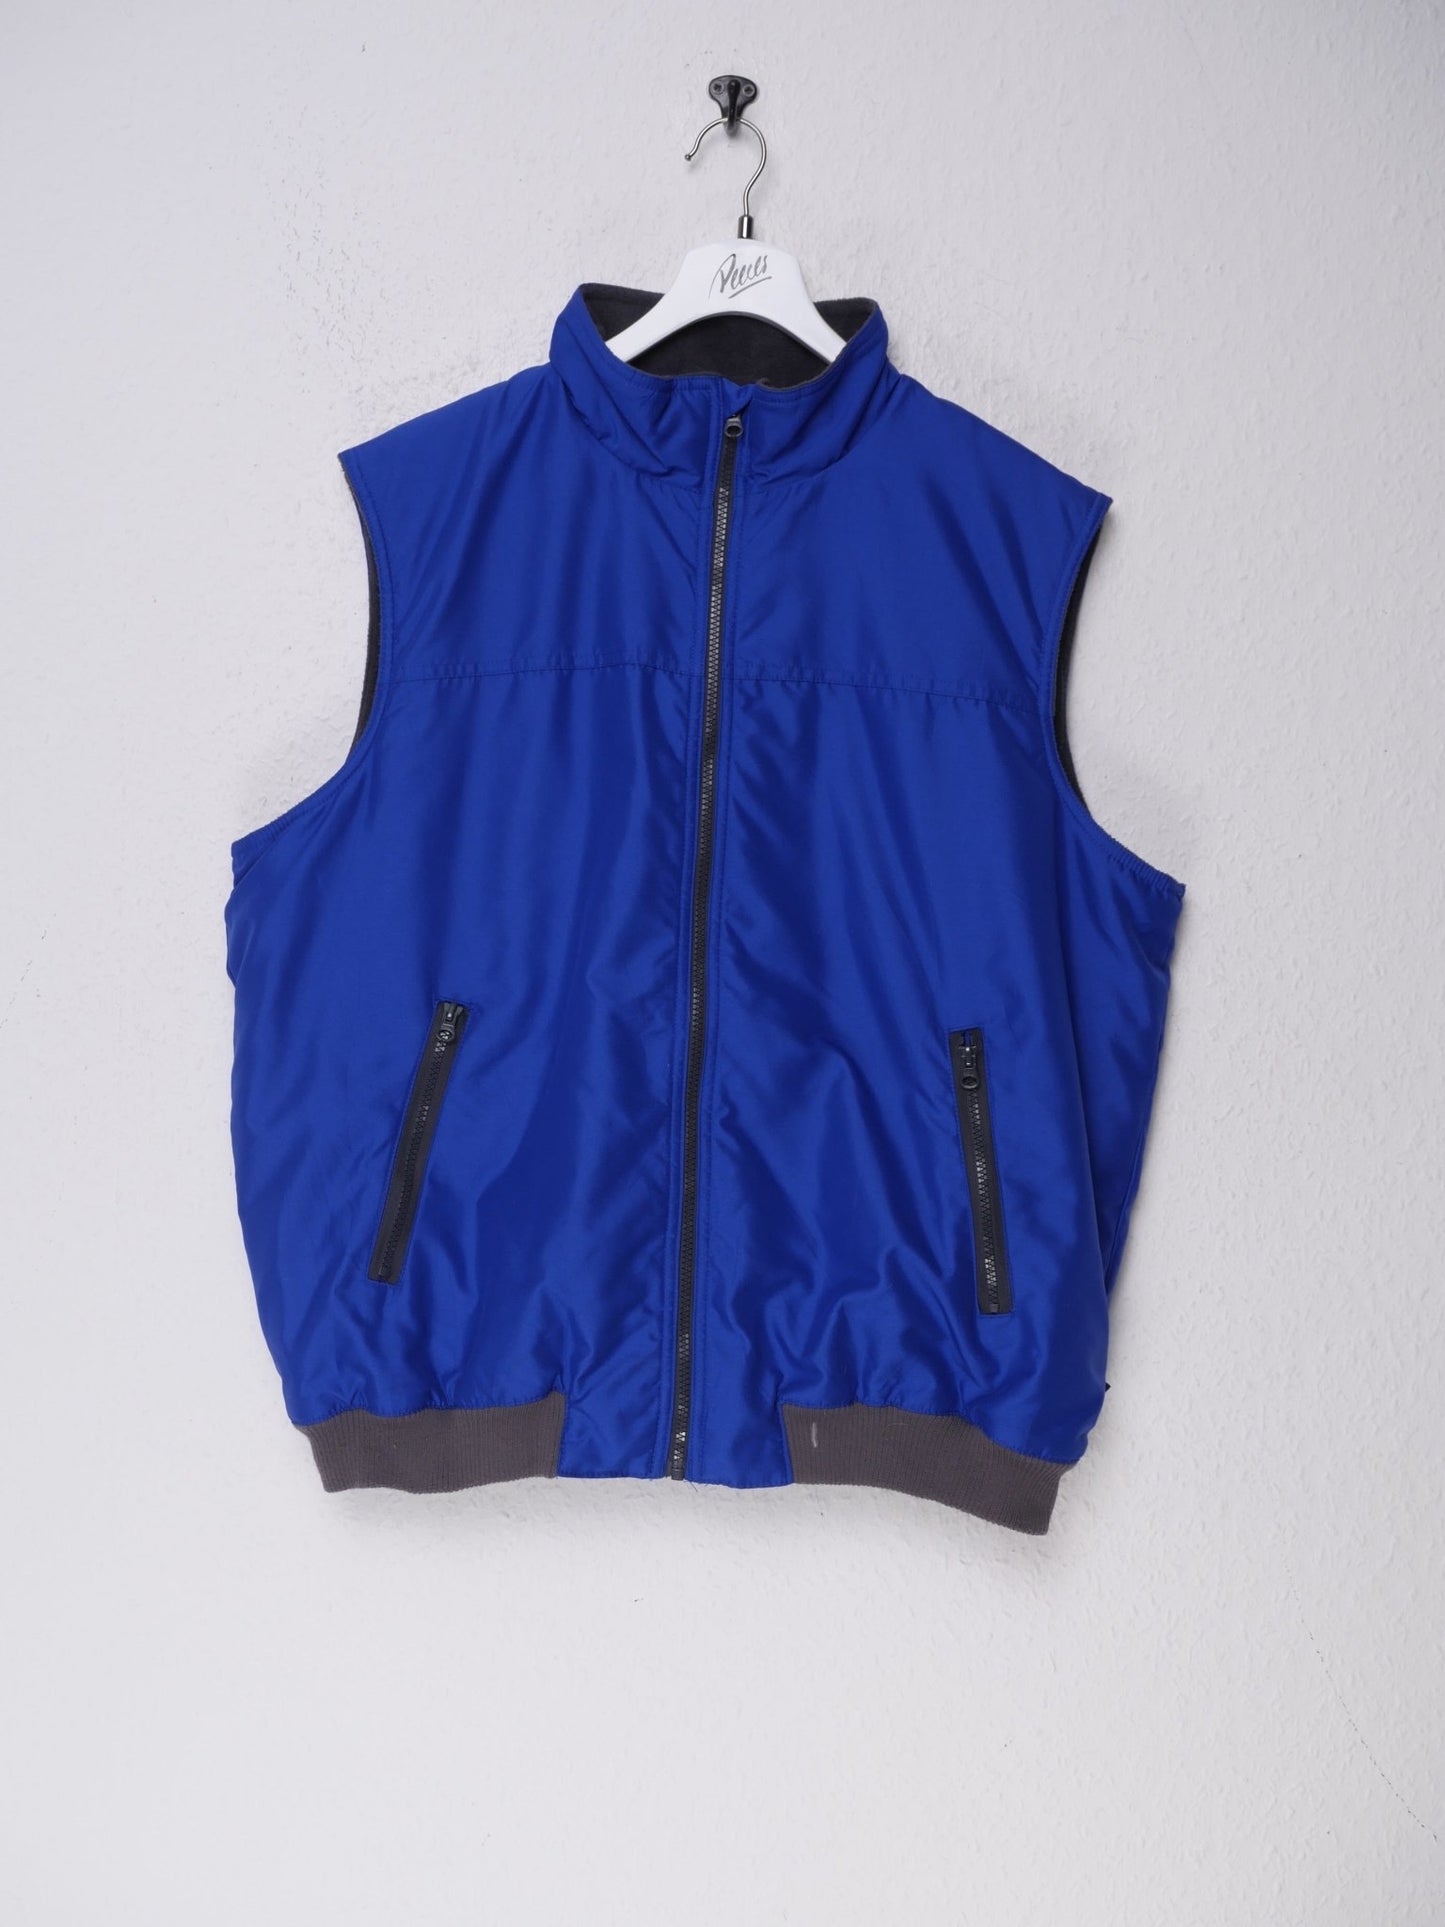 Chaps basic plain blue Vest Jacket - Peeces